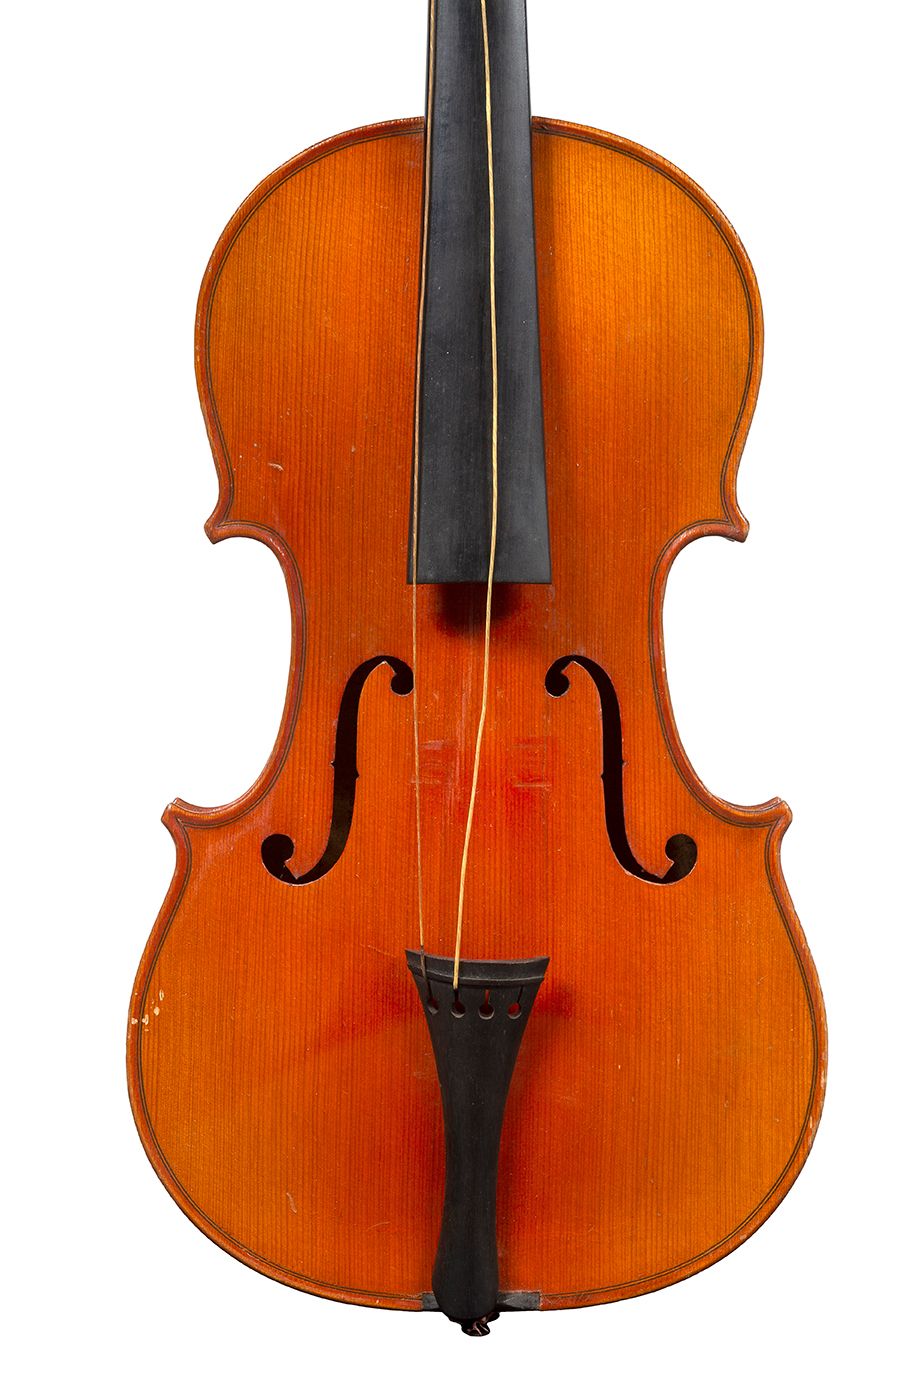 Null 20世纪的小提琴
带着天书的标签尼古拉斯-阿马蒂
状况良好 
背面有359毫米